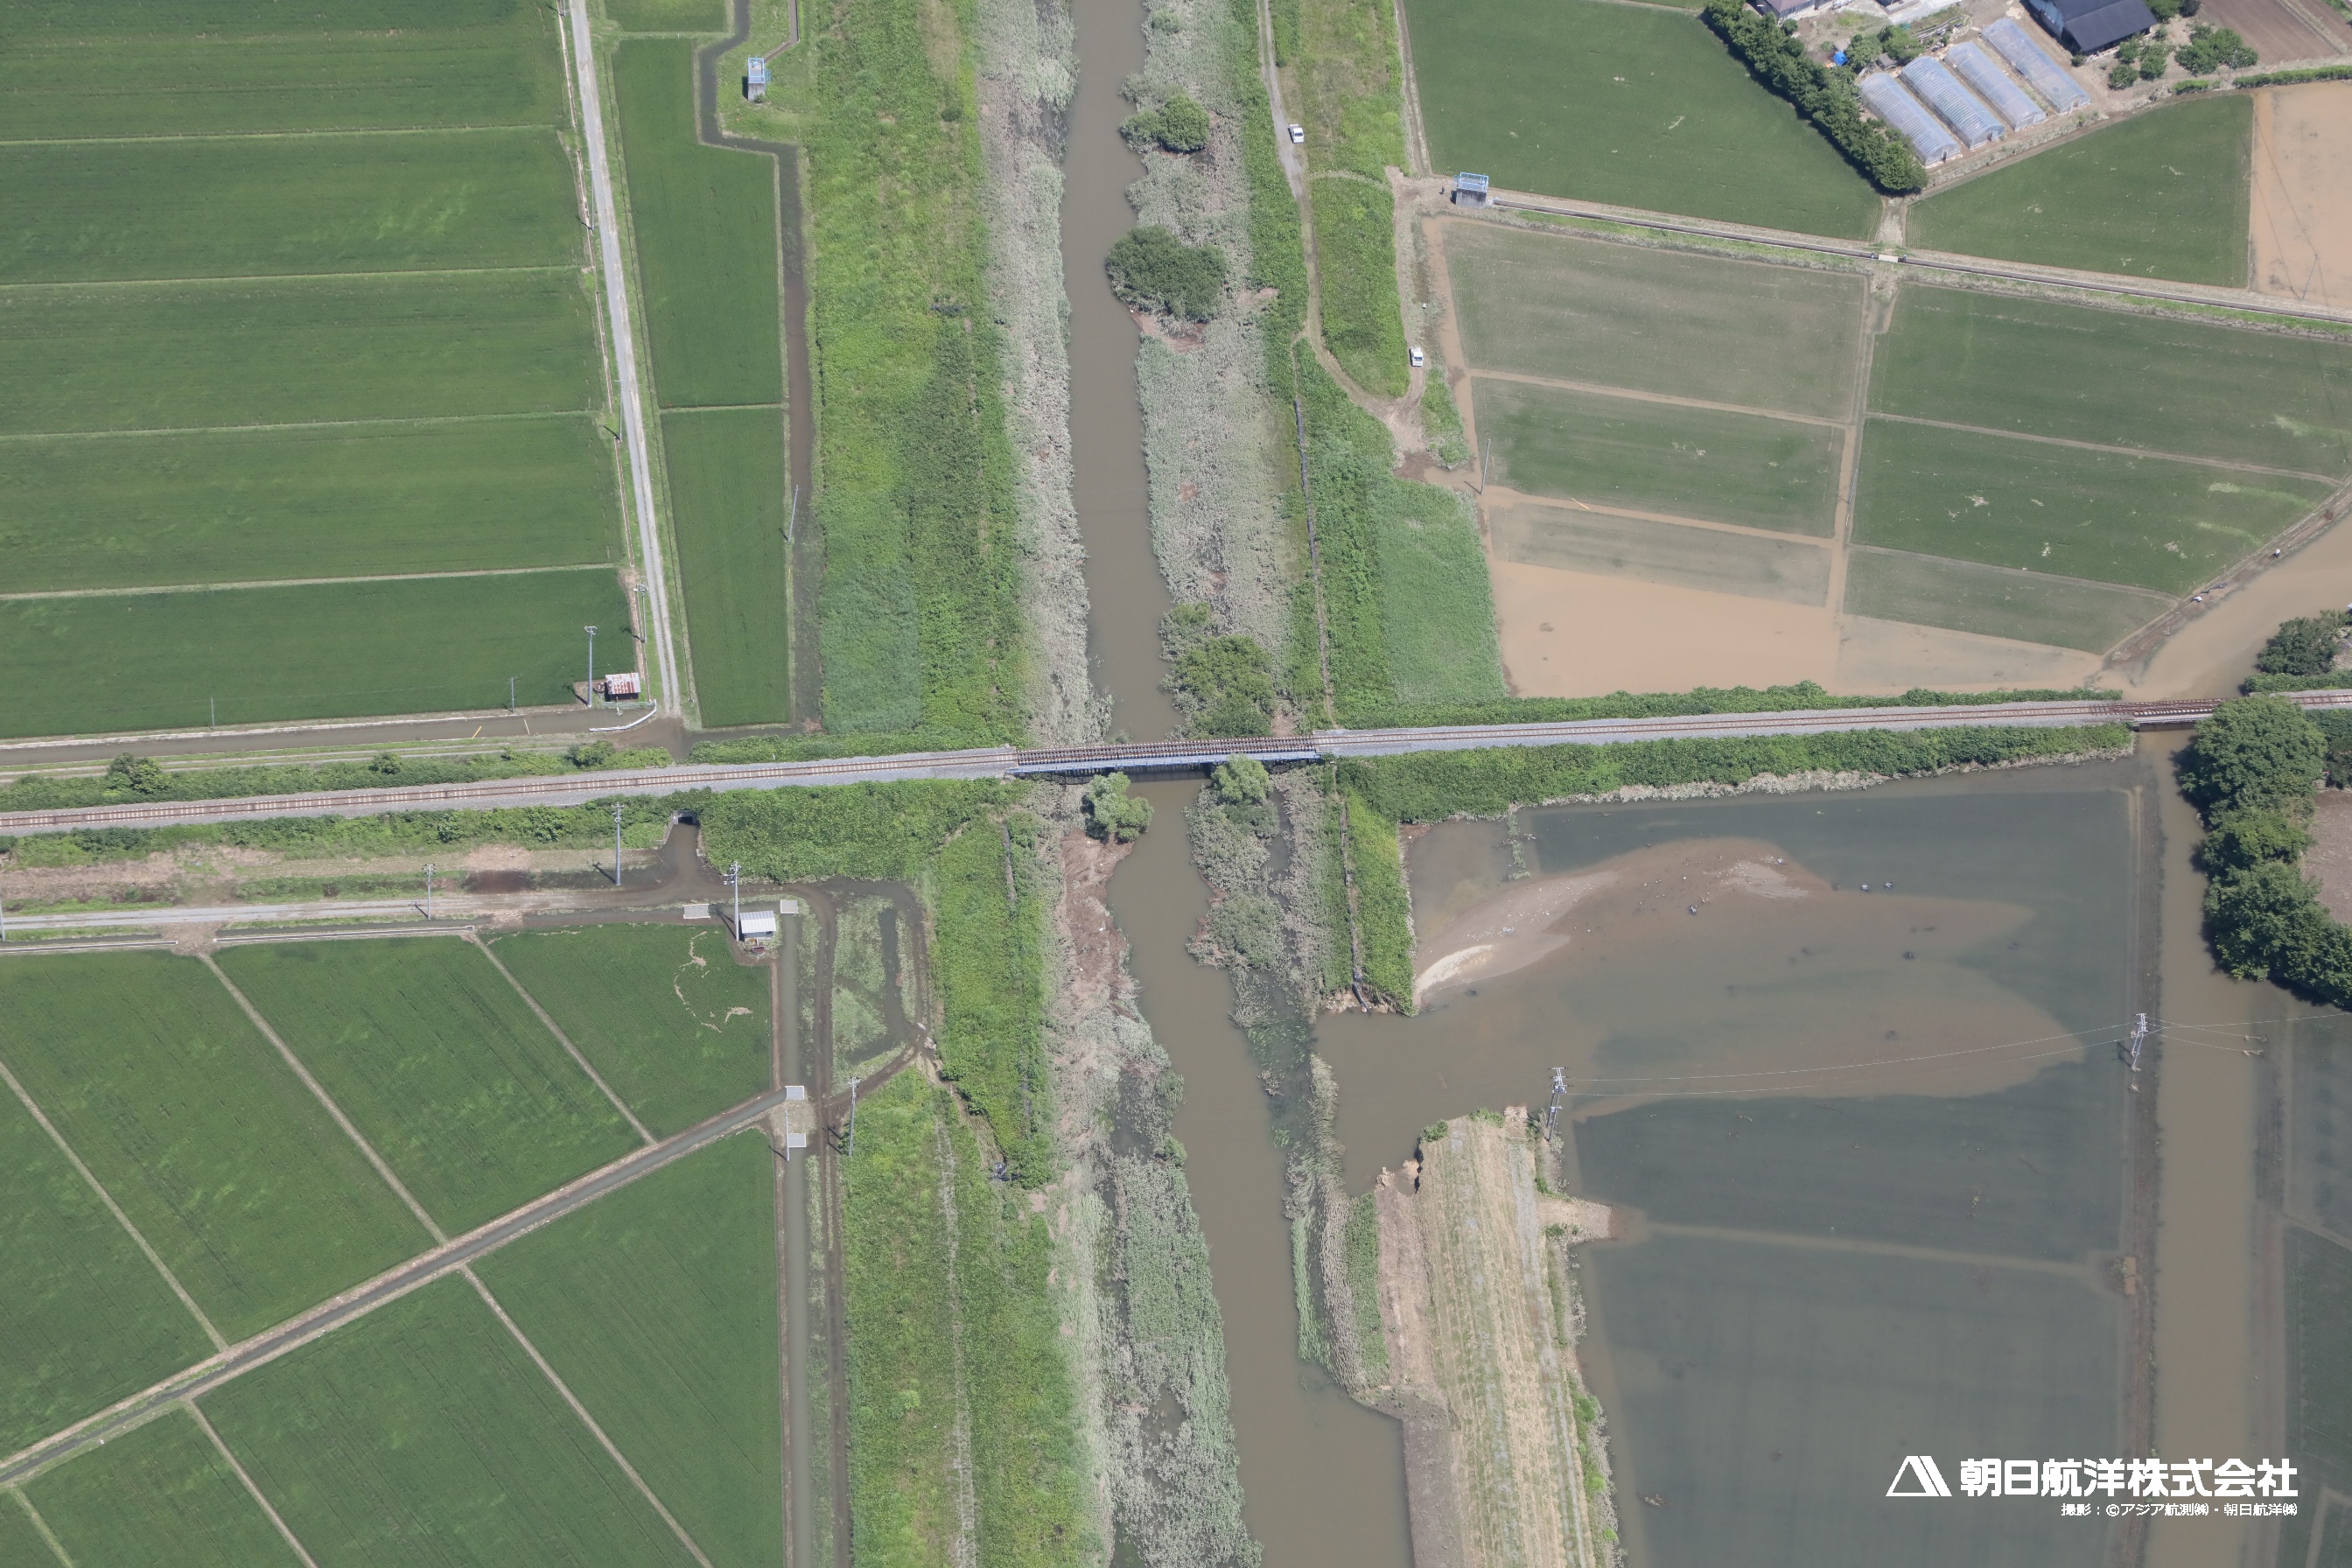 13A1224　出来川右岸の堤防決壊状況。江合川との合流点から約1km上流に位置。 （上流（手前）から下流方向（奥）を撮影）